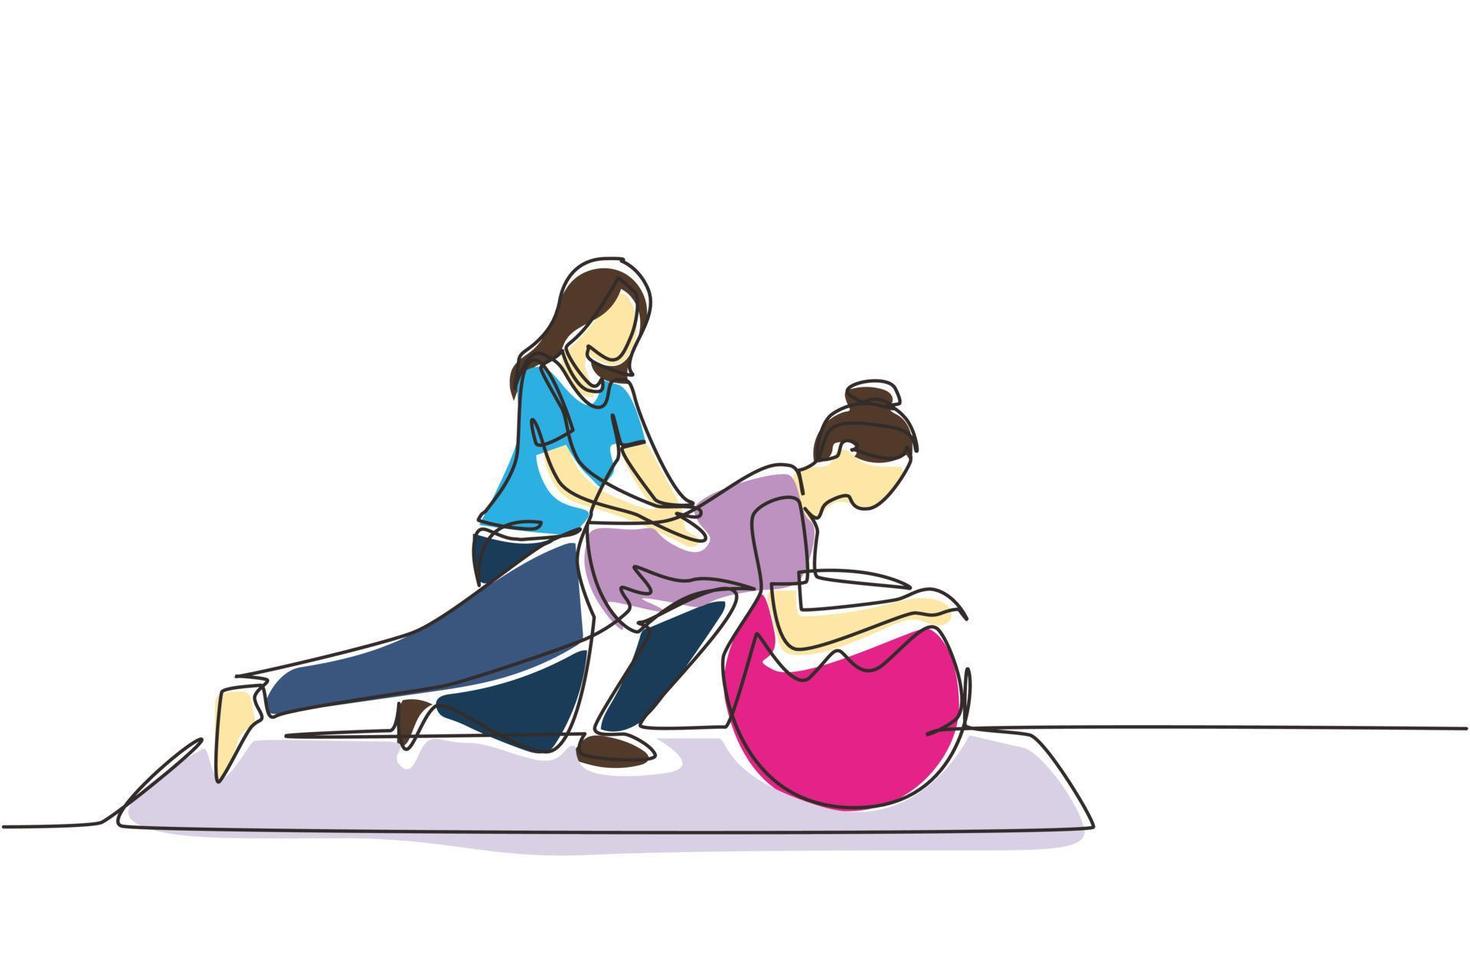 kontinuerlig en rad ritning fysioterapeut läkare rehabiliterar kvinna patient. kvinna gör övningar på gummiboll. sjukgymnastik rehab, skadeåterhämtning. enkel rad rita design vektorillustration vektor